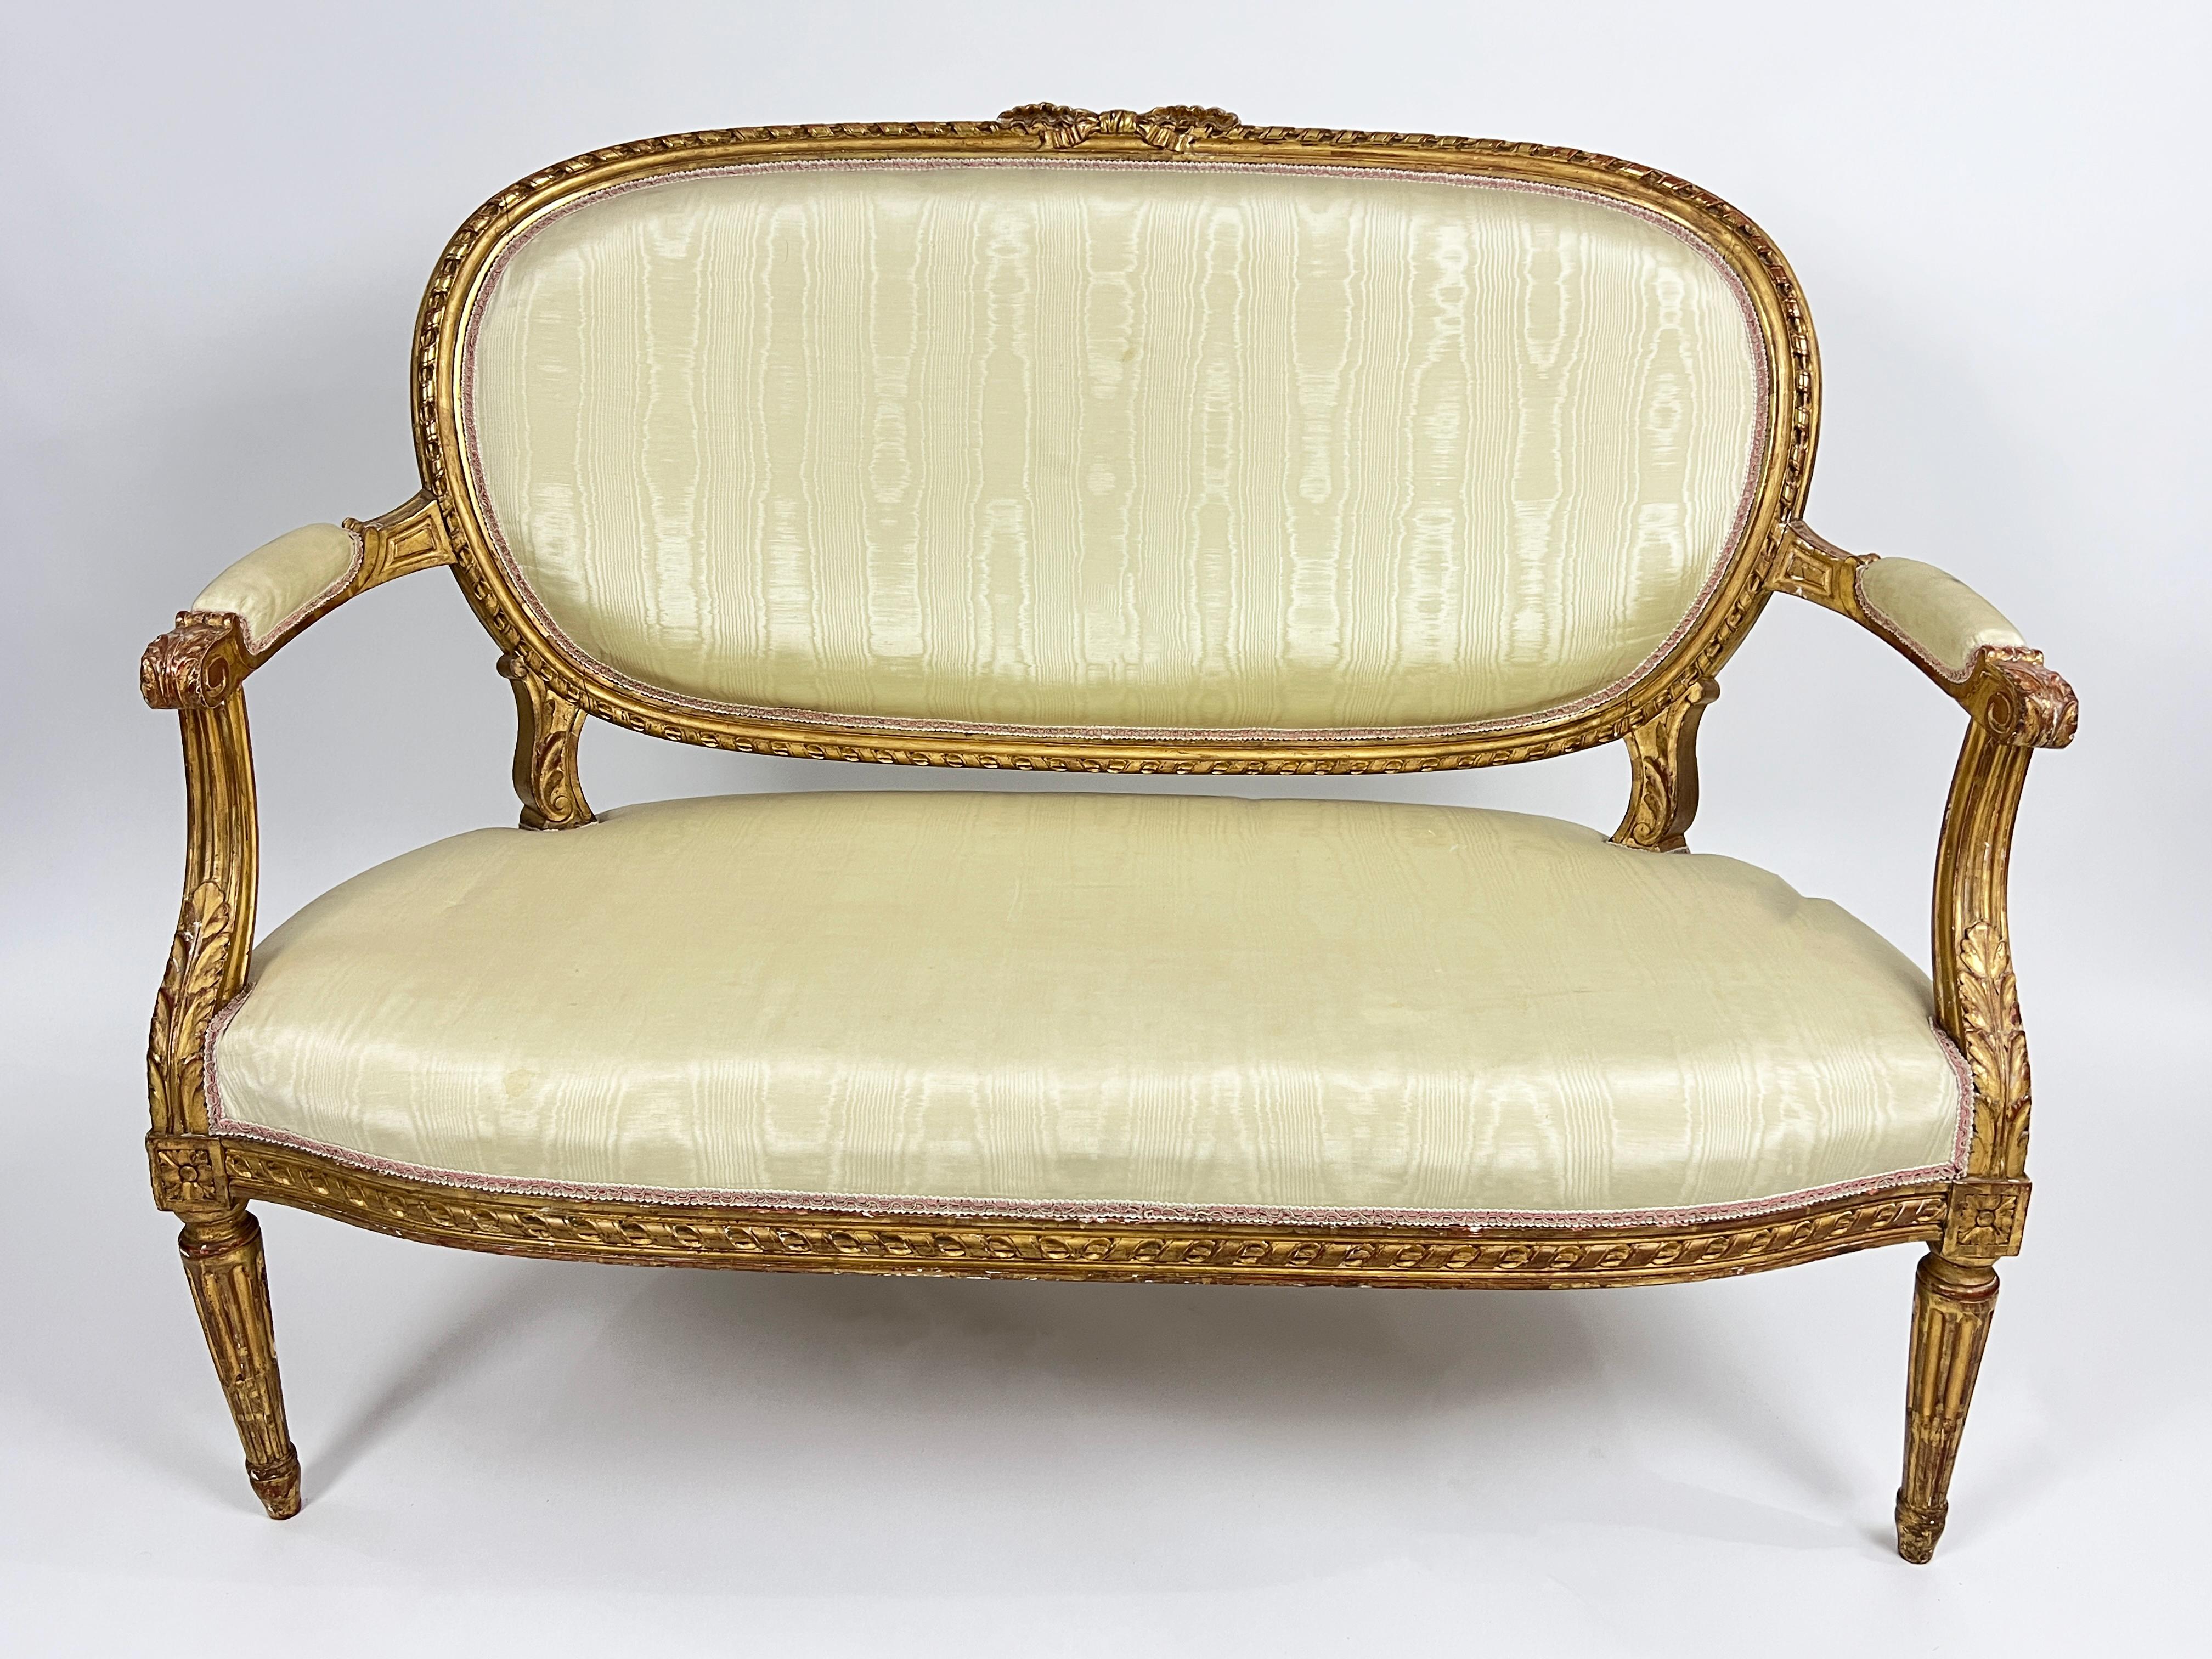 Eine feine Salonsuite aus dem 19. Jahrhundert, bestehend aus einem Canapé/Sofa und vier Fauteuils/offenen Sesseln, jeweils mit einem geschnitzten Rahmen mit Seildrehung, ovaler gepolsterter Rückenlehne, Armlehnen und Sitzfläche mit weißem